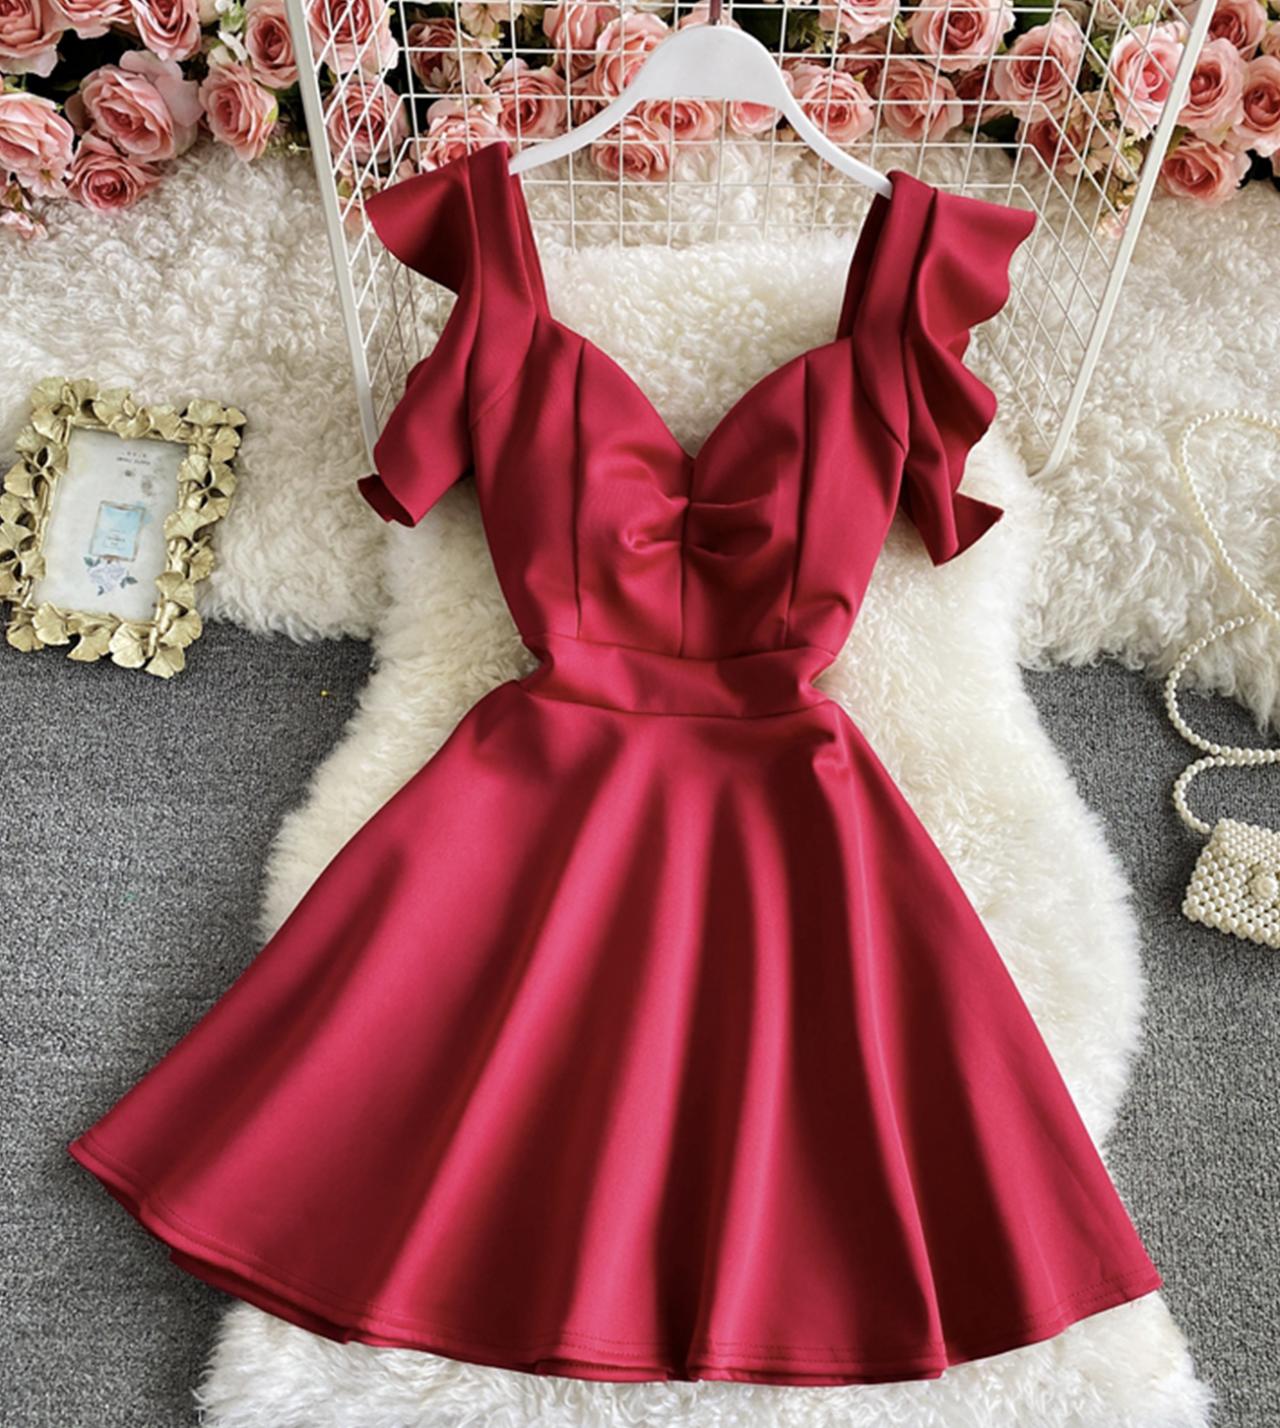 Süßes rückenfreies kurzes Kleid in A-Linie 782